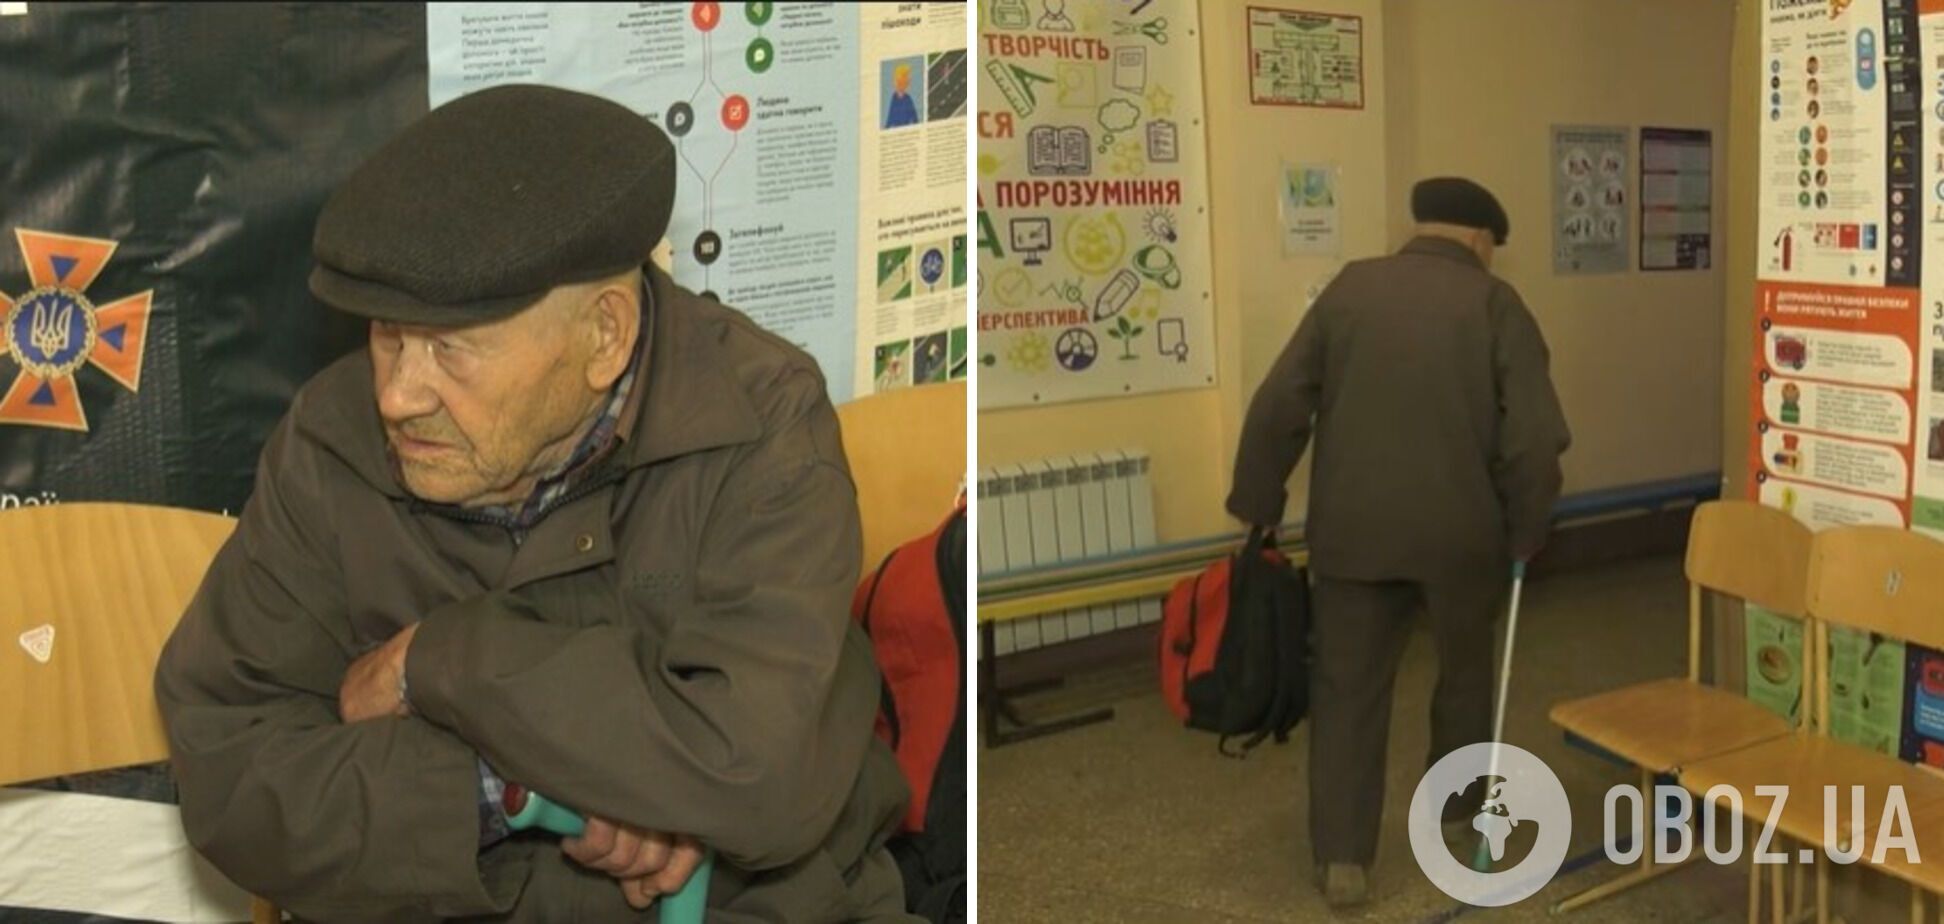 'Поражающая история': 88-летний дедушка вышел из оккупированной части Очеретиного, чтобы не получать гражданство России. Видео